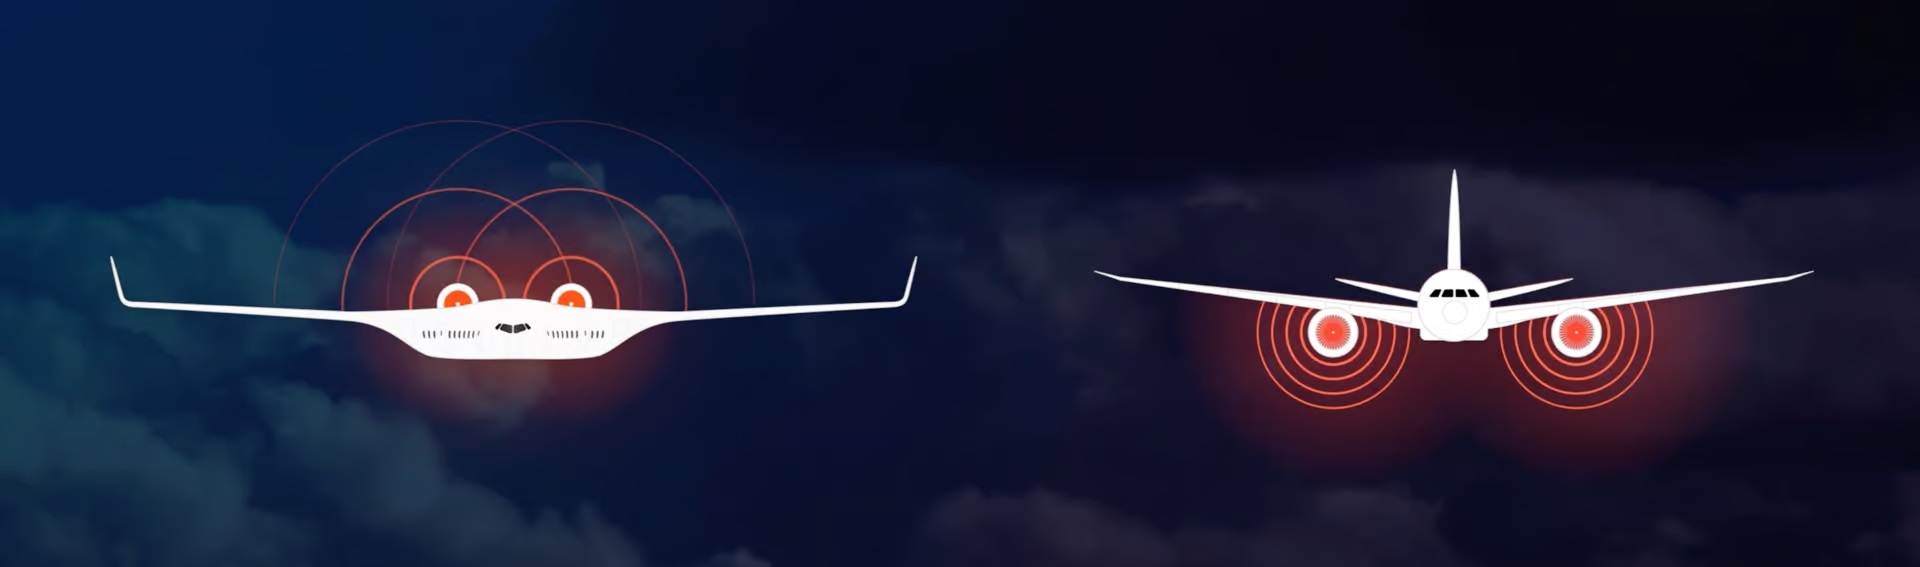 Design „blended wing“ nabízí velký vztlak. Kredit: JetZero.